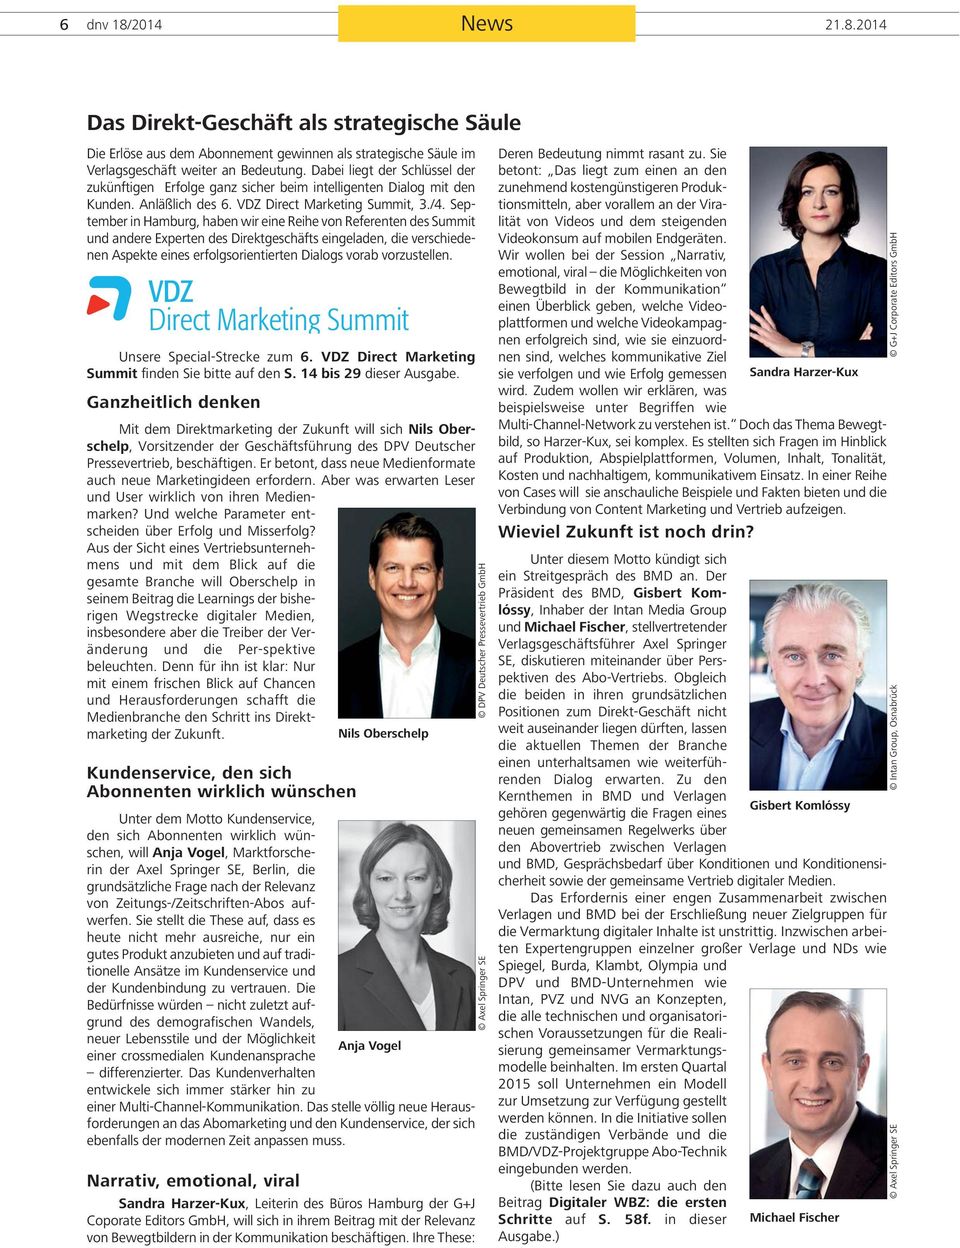 September in Hamburg, haben wir eine Reihe von Referenten des Summit und andere Experten des Direktgeschäfts eingeladen, die verschiedenen Aspekte eines erfolgsorientierten Dialogs vorab vorzustellen.